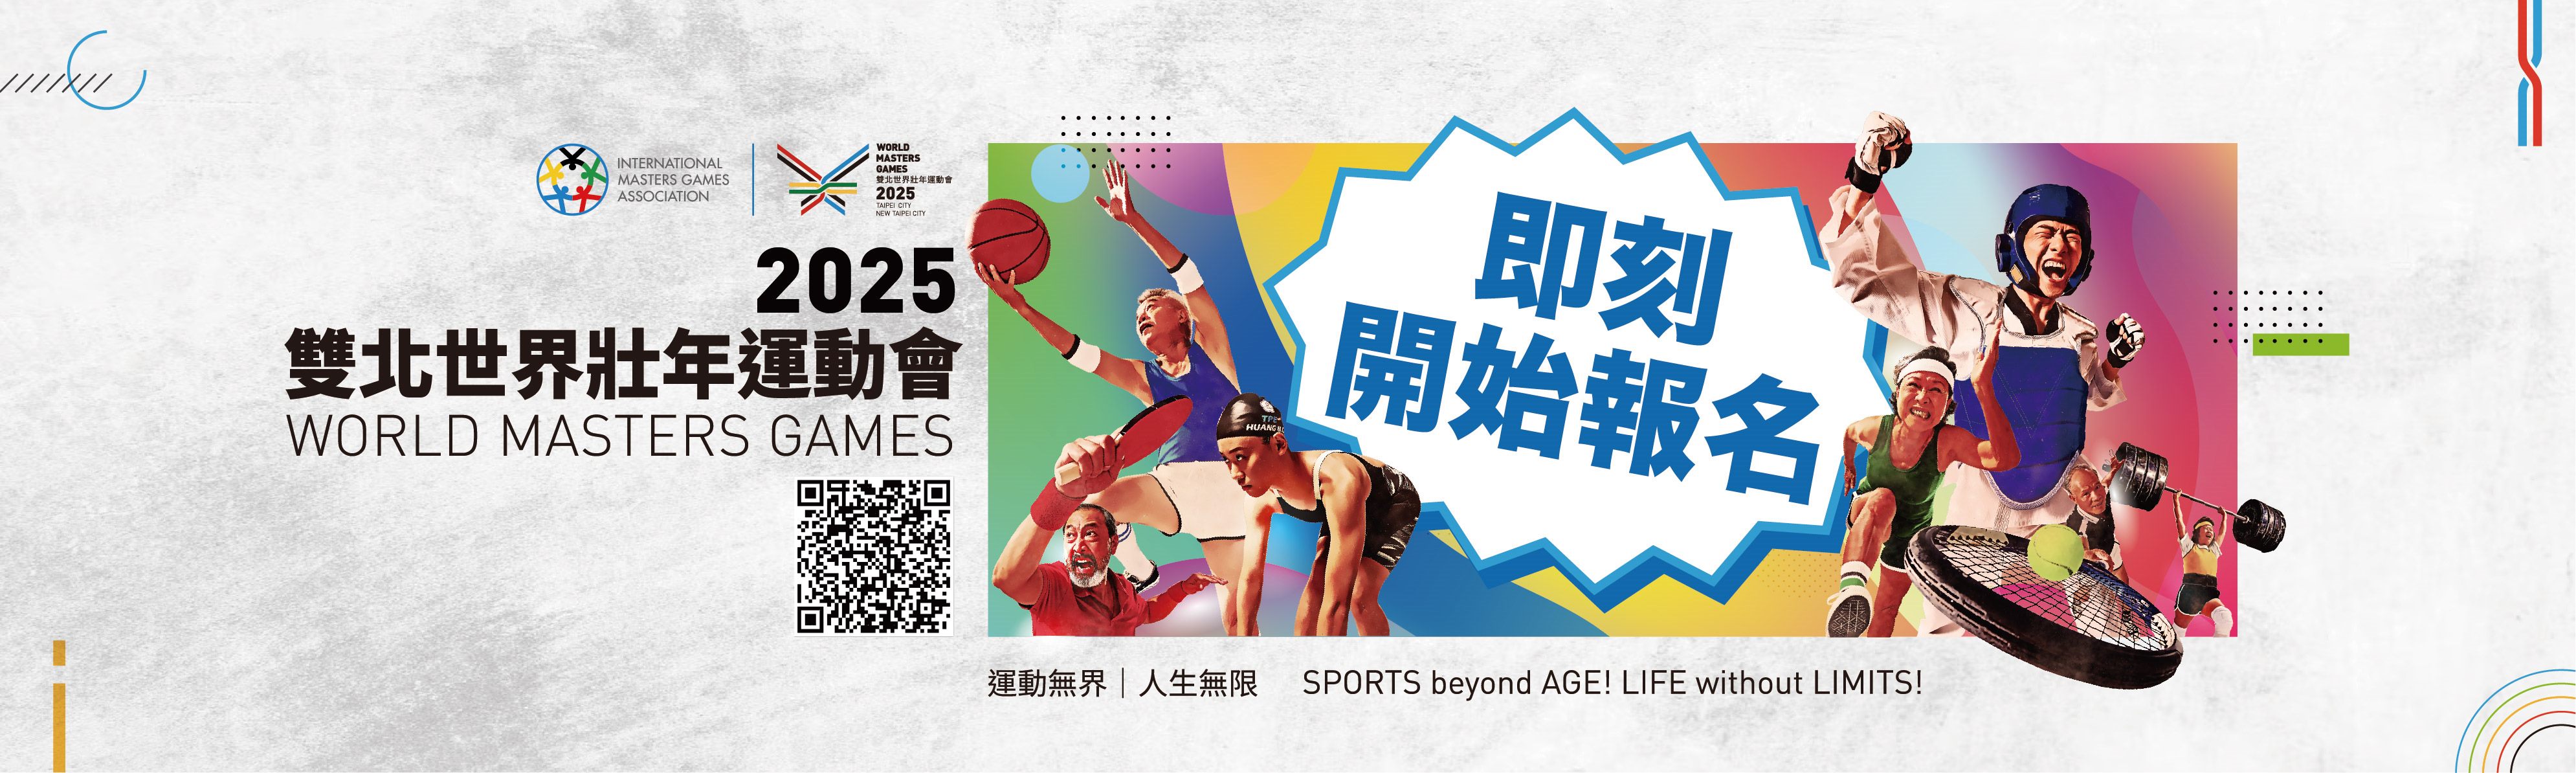 World Masters Games 2025 Taipei & New Taipei City